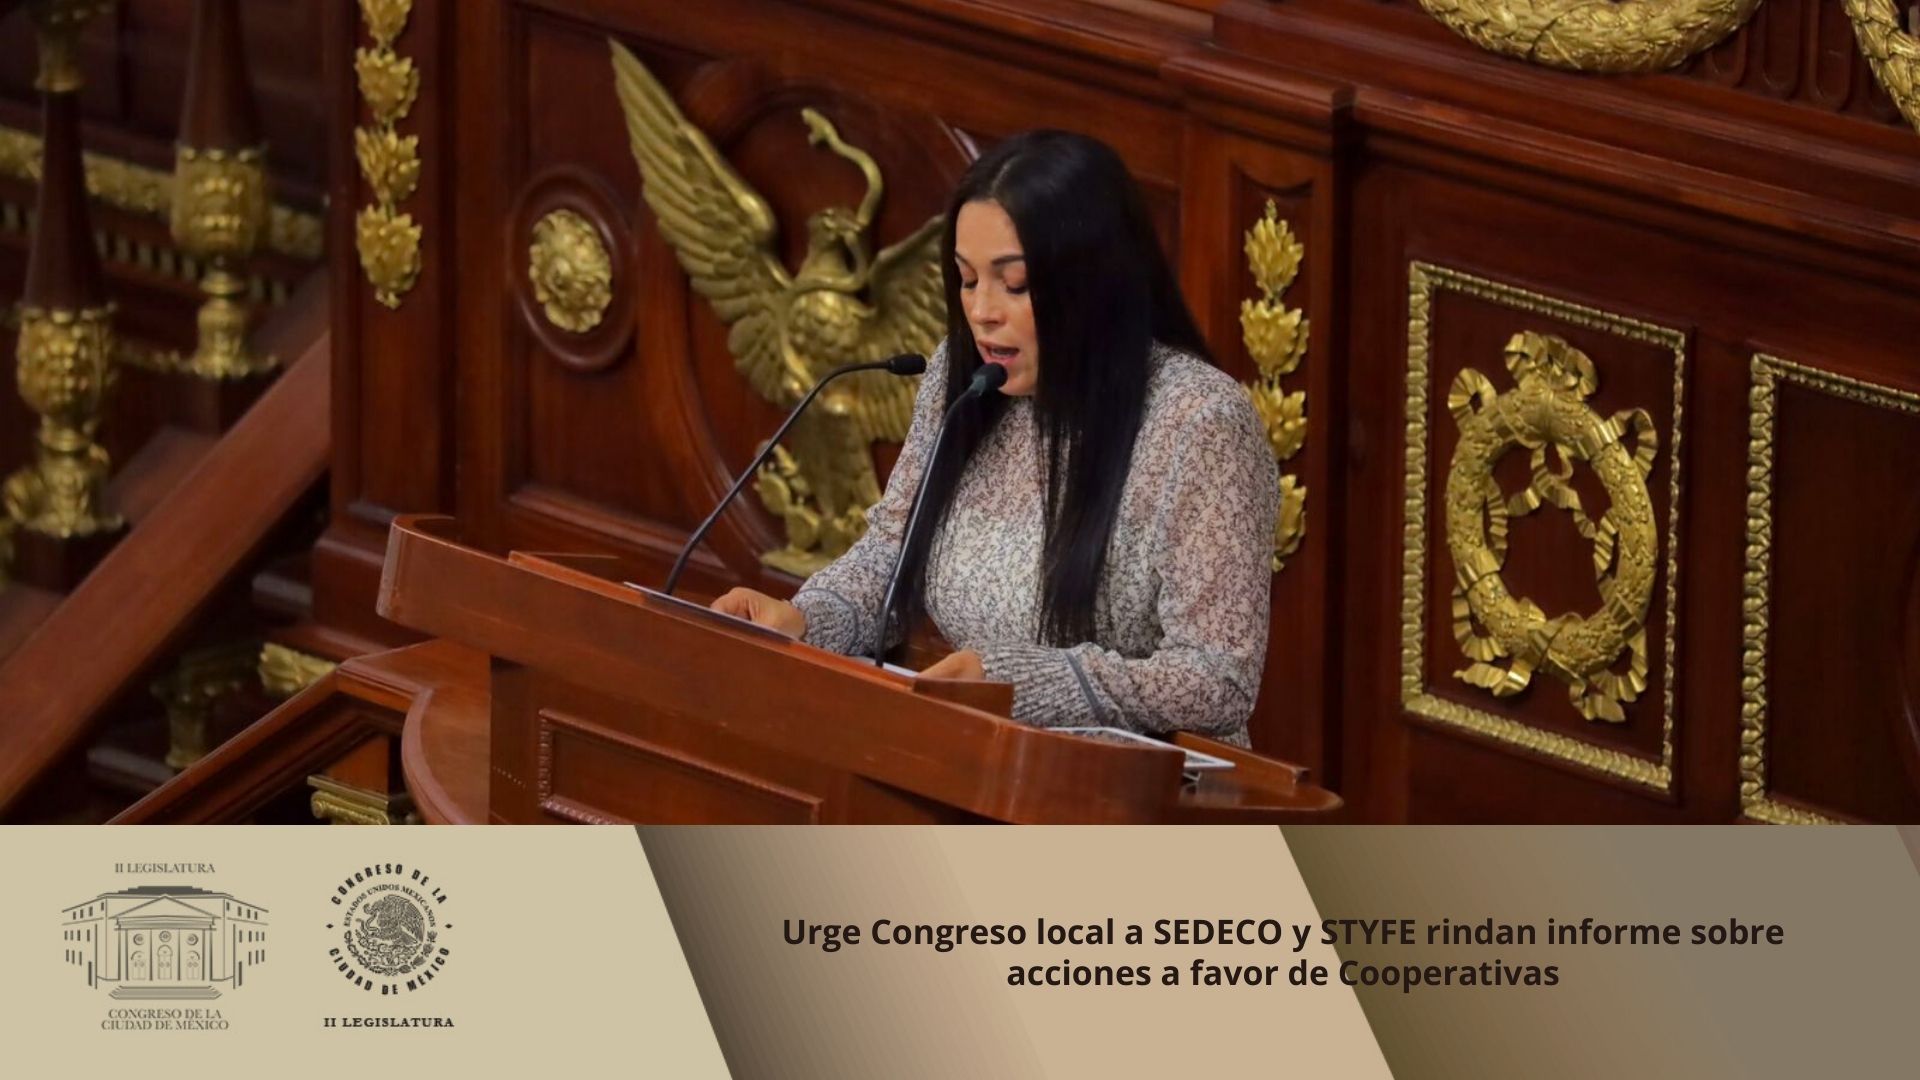 Urge Congreso local a SEDECO y STYFE rindan informe sobre acciones a favor de Cooperativas